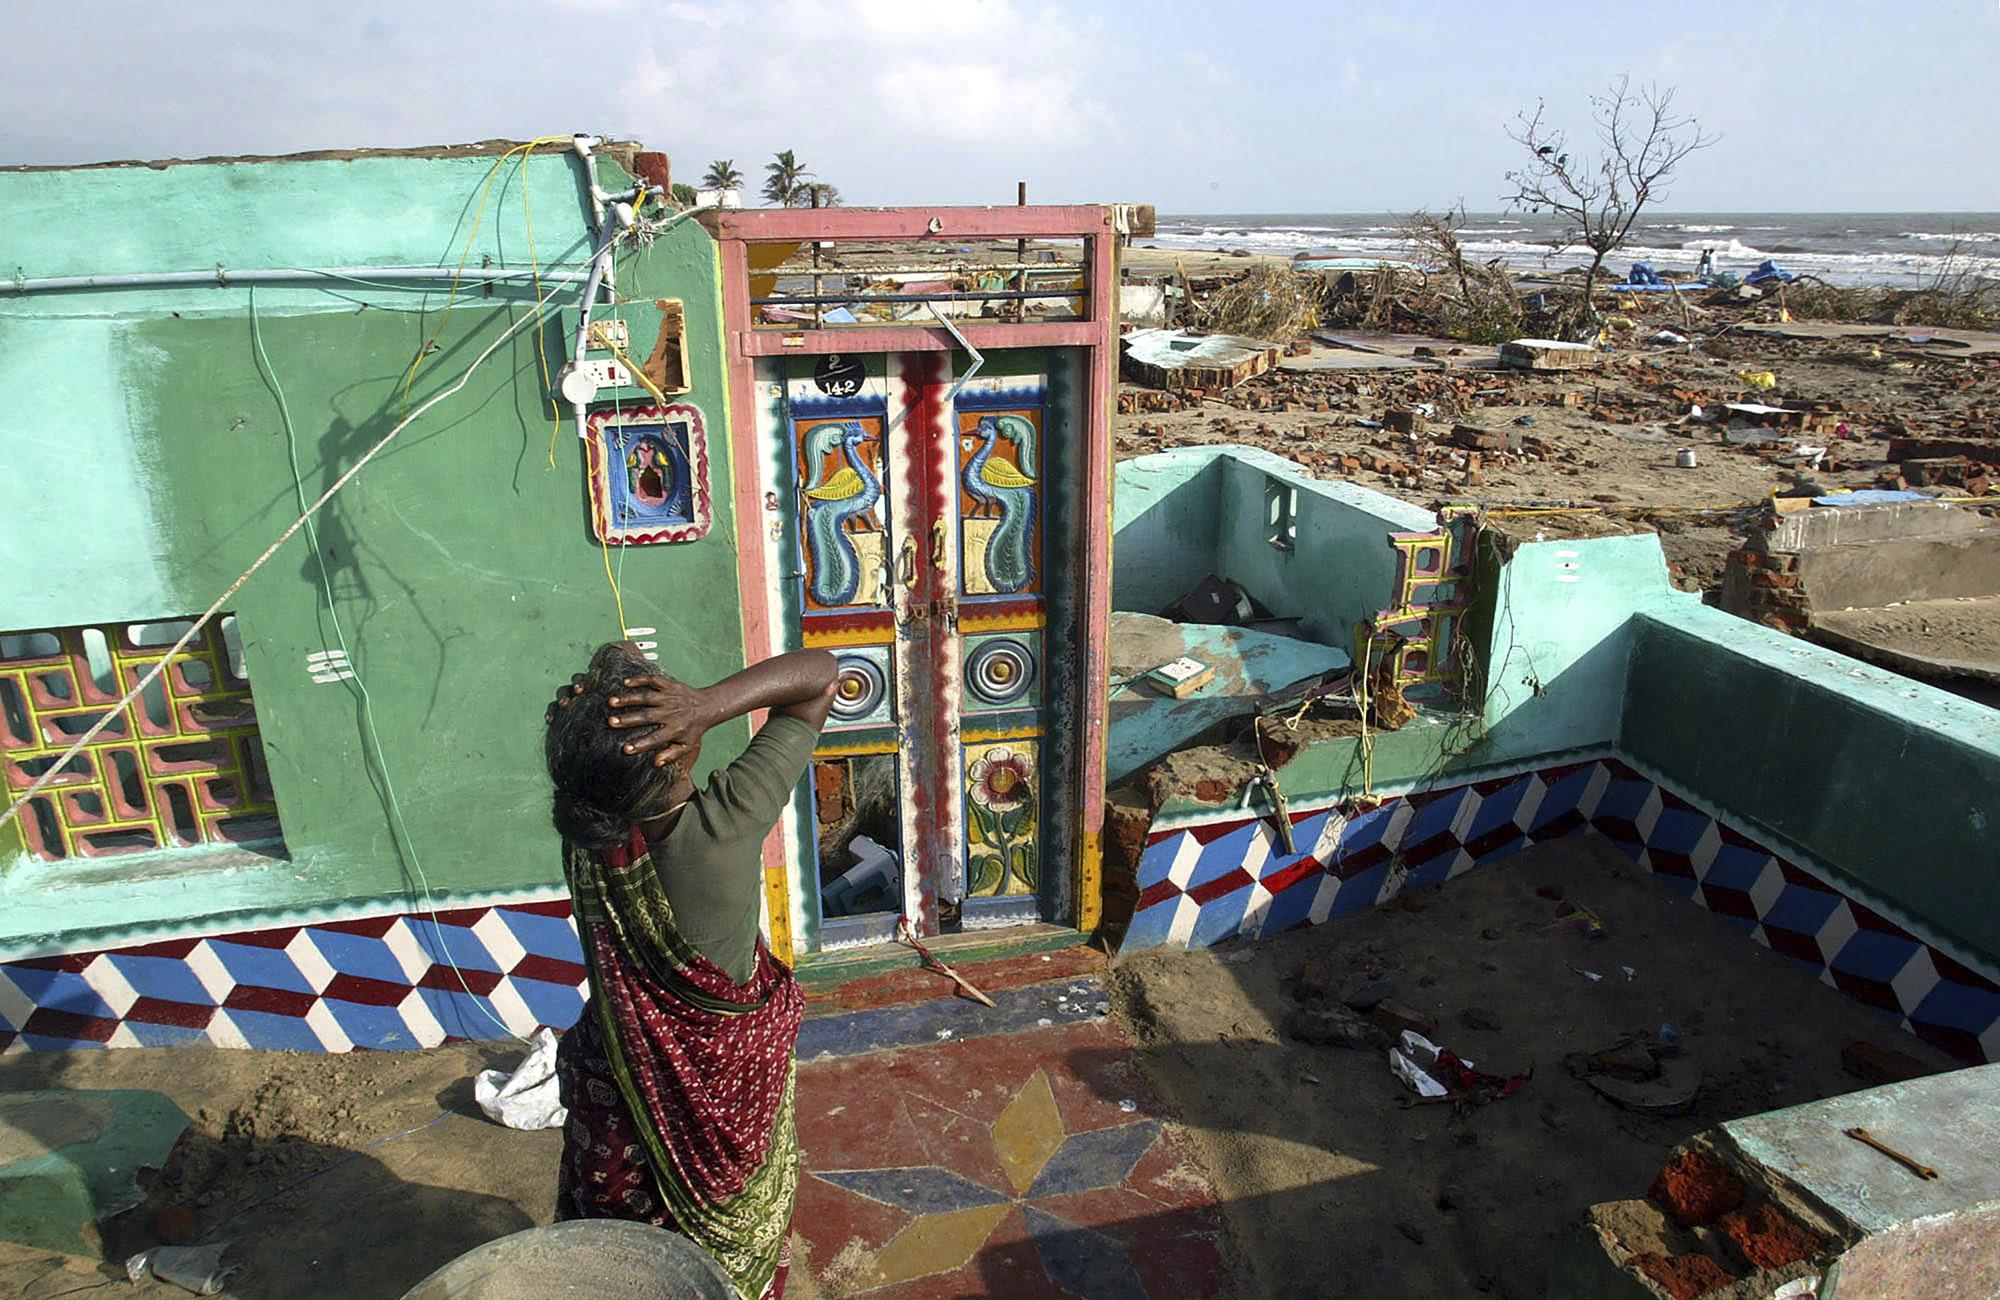 ARQUIVO - Paliyamma lamenta ao retornar para sua casa danificada em uma colônia de pescadores atingida pelo tsunami, em Nagappattinam, no estado de Tamil Nadu, no sul da Índia, em 31 de dezembro de 2004. O enorme tsunami desencadeado por um terremoto submarino no Oceano Índico matou mais de 10.000 índios. Paliyama perdeu sete membros de sua família. (Foto AP/Gurinder Osan, Arquivo)